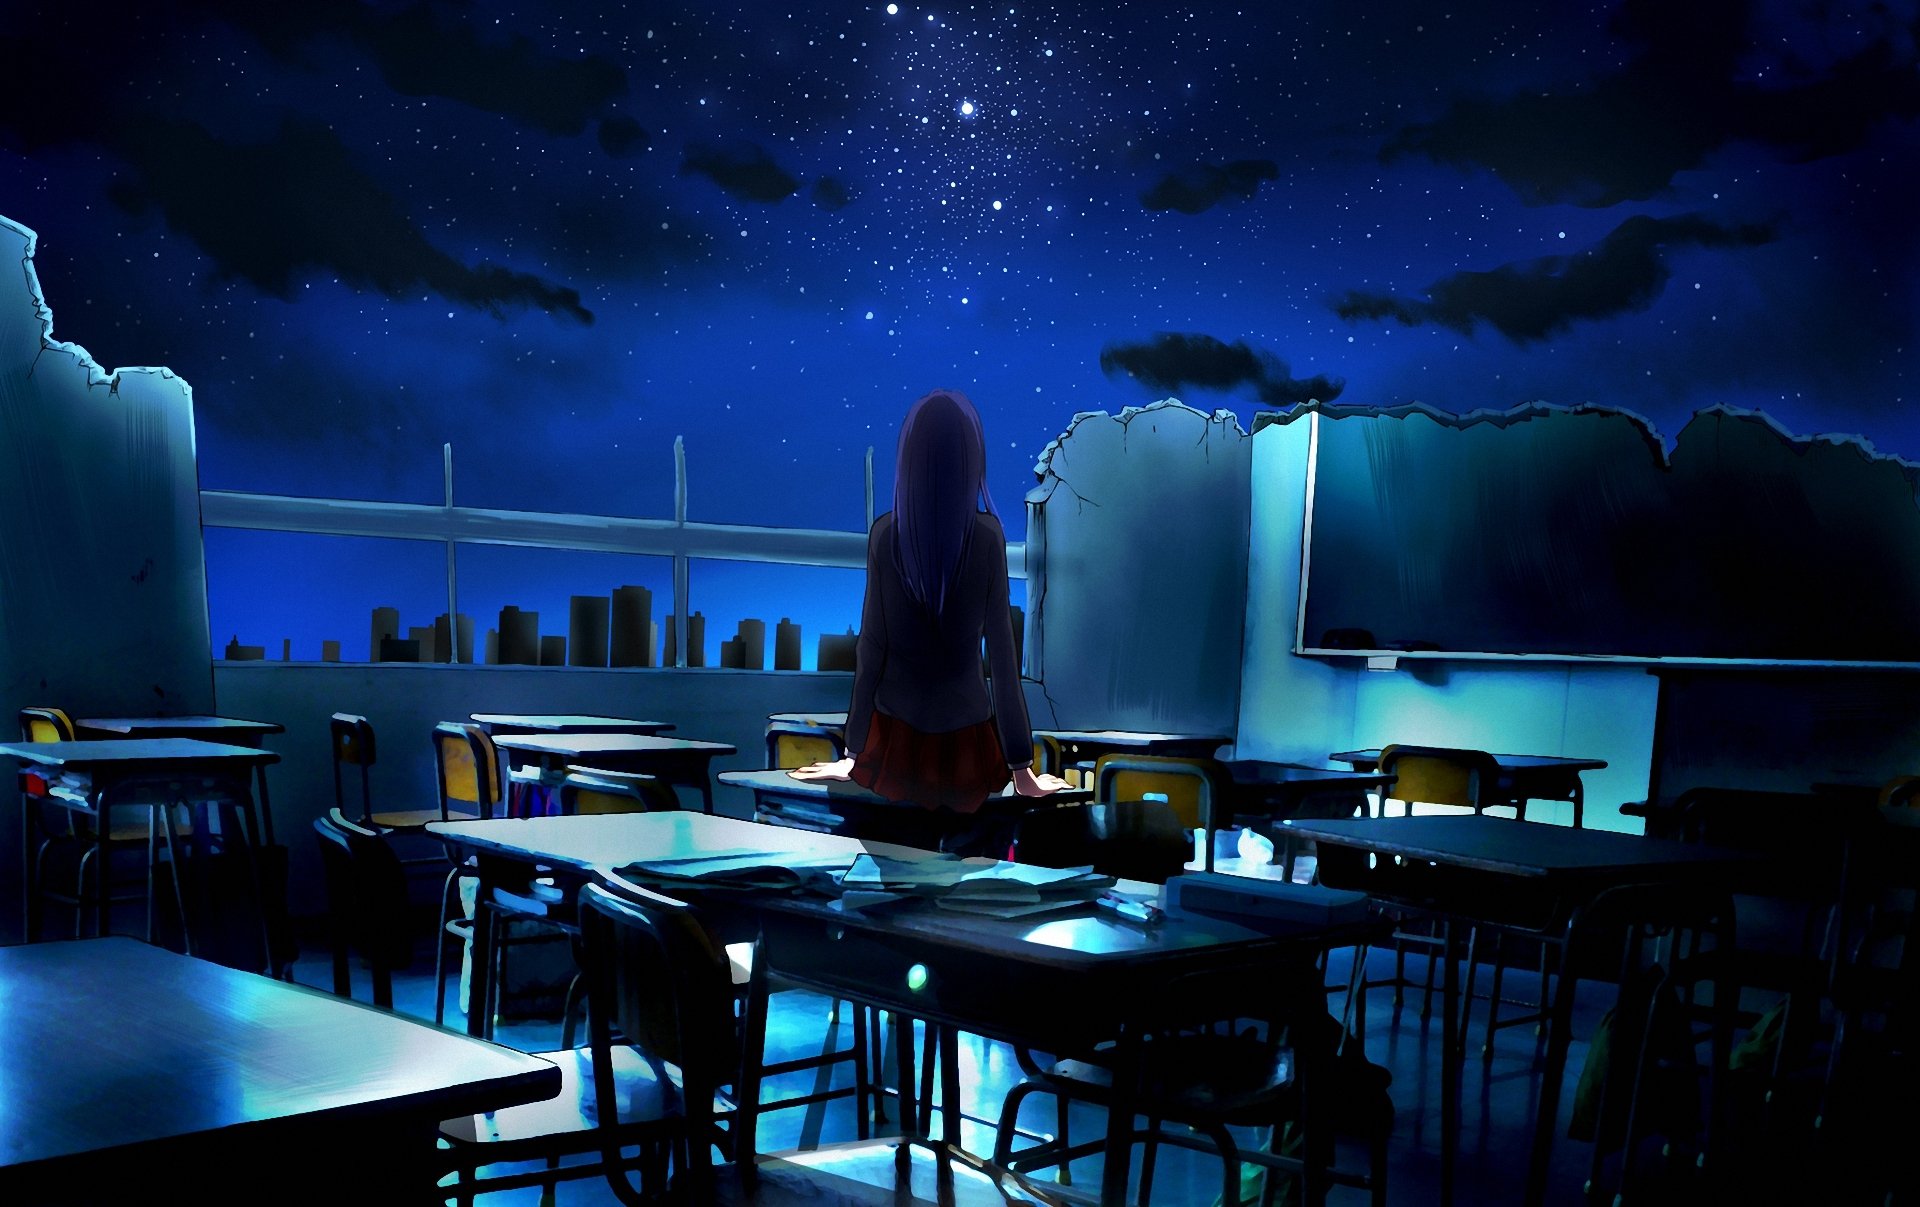 Девушка стоит в классе ночью Обои на рабочий стол.